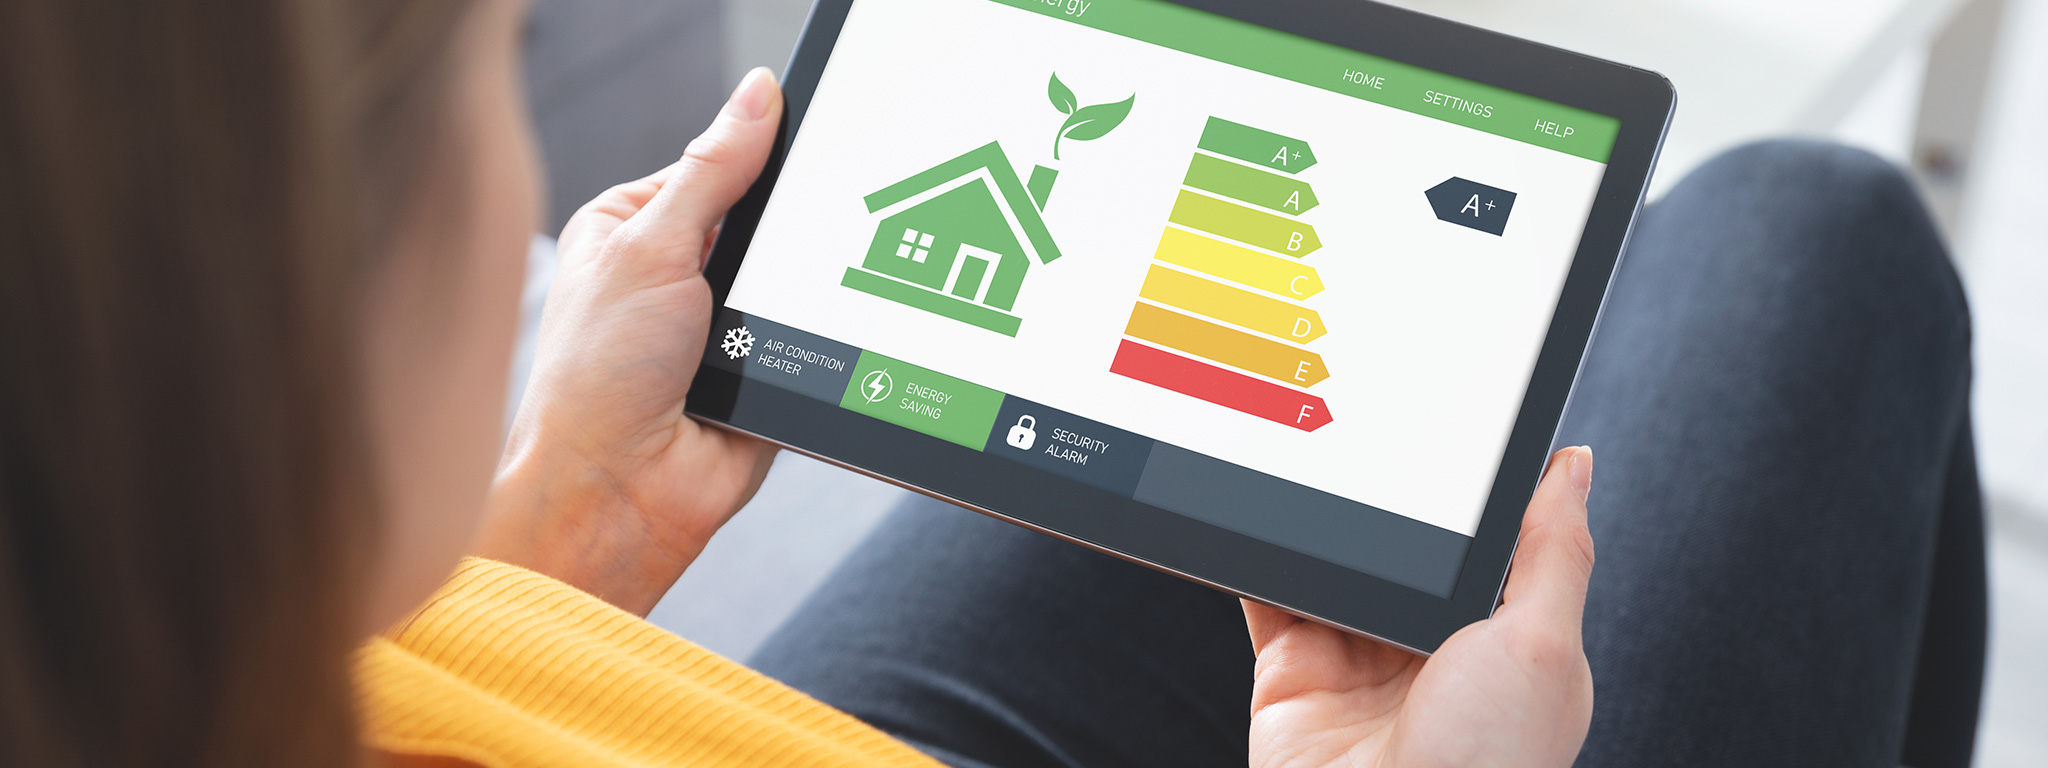 Como melhorar a eficiência energética na sua habitação